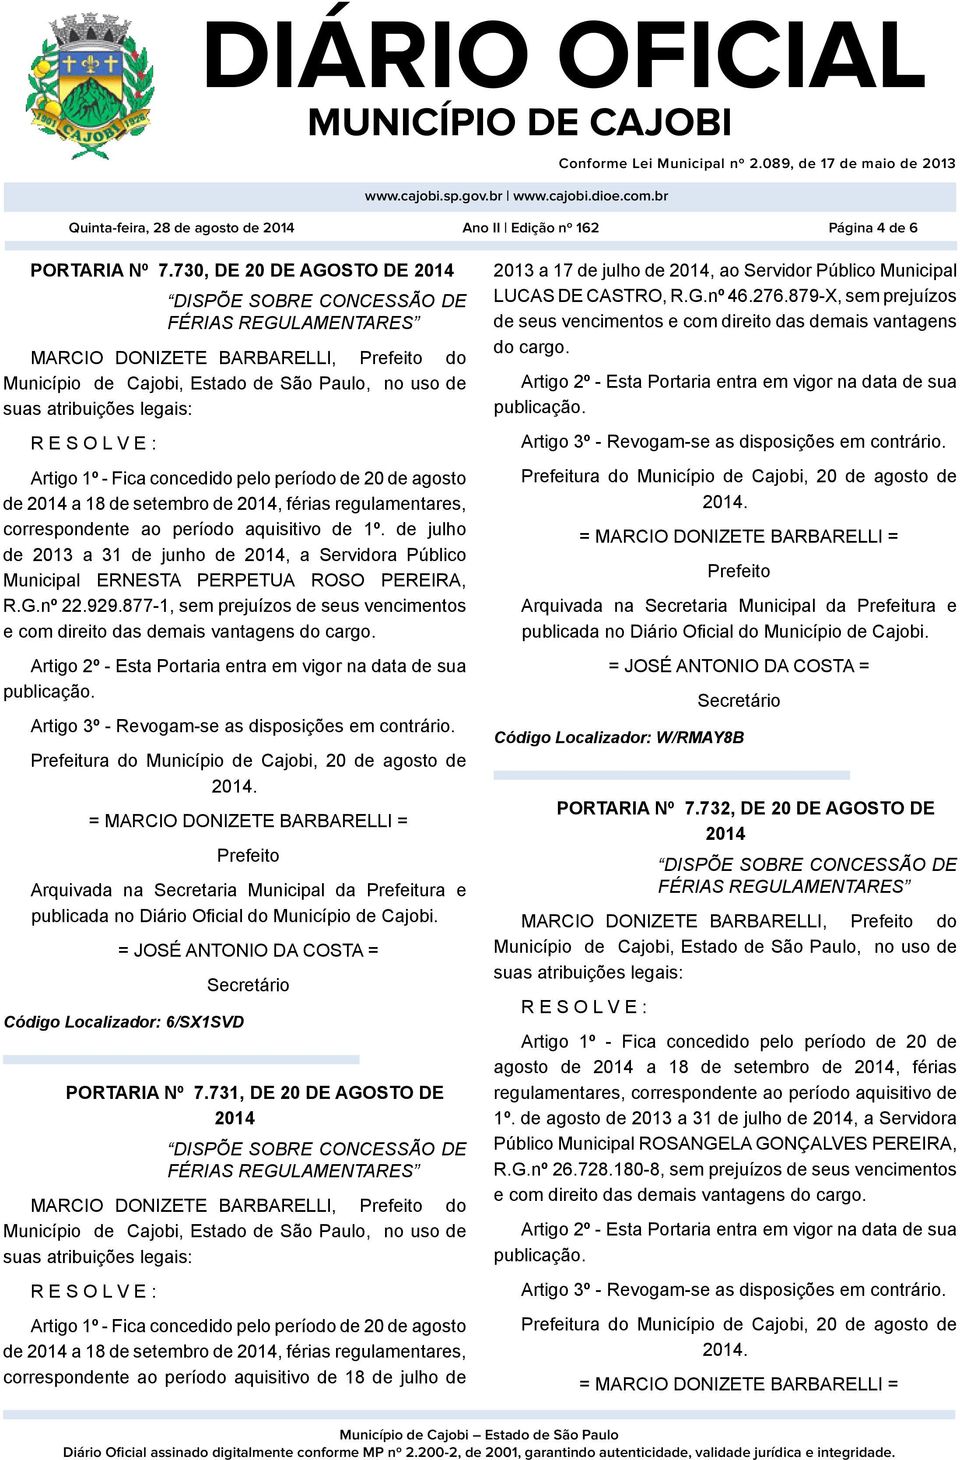 1º. de julho de 2013 a 31 de junho de, a Servidora Público Municipal ERNESTA PERPETUA ROSO PEREIRA, R.G.nº 22.929.877-1, sem prejuízos de seus vencimentos e com direito das demais vantagens do cargo.